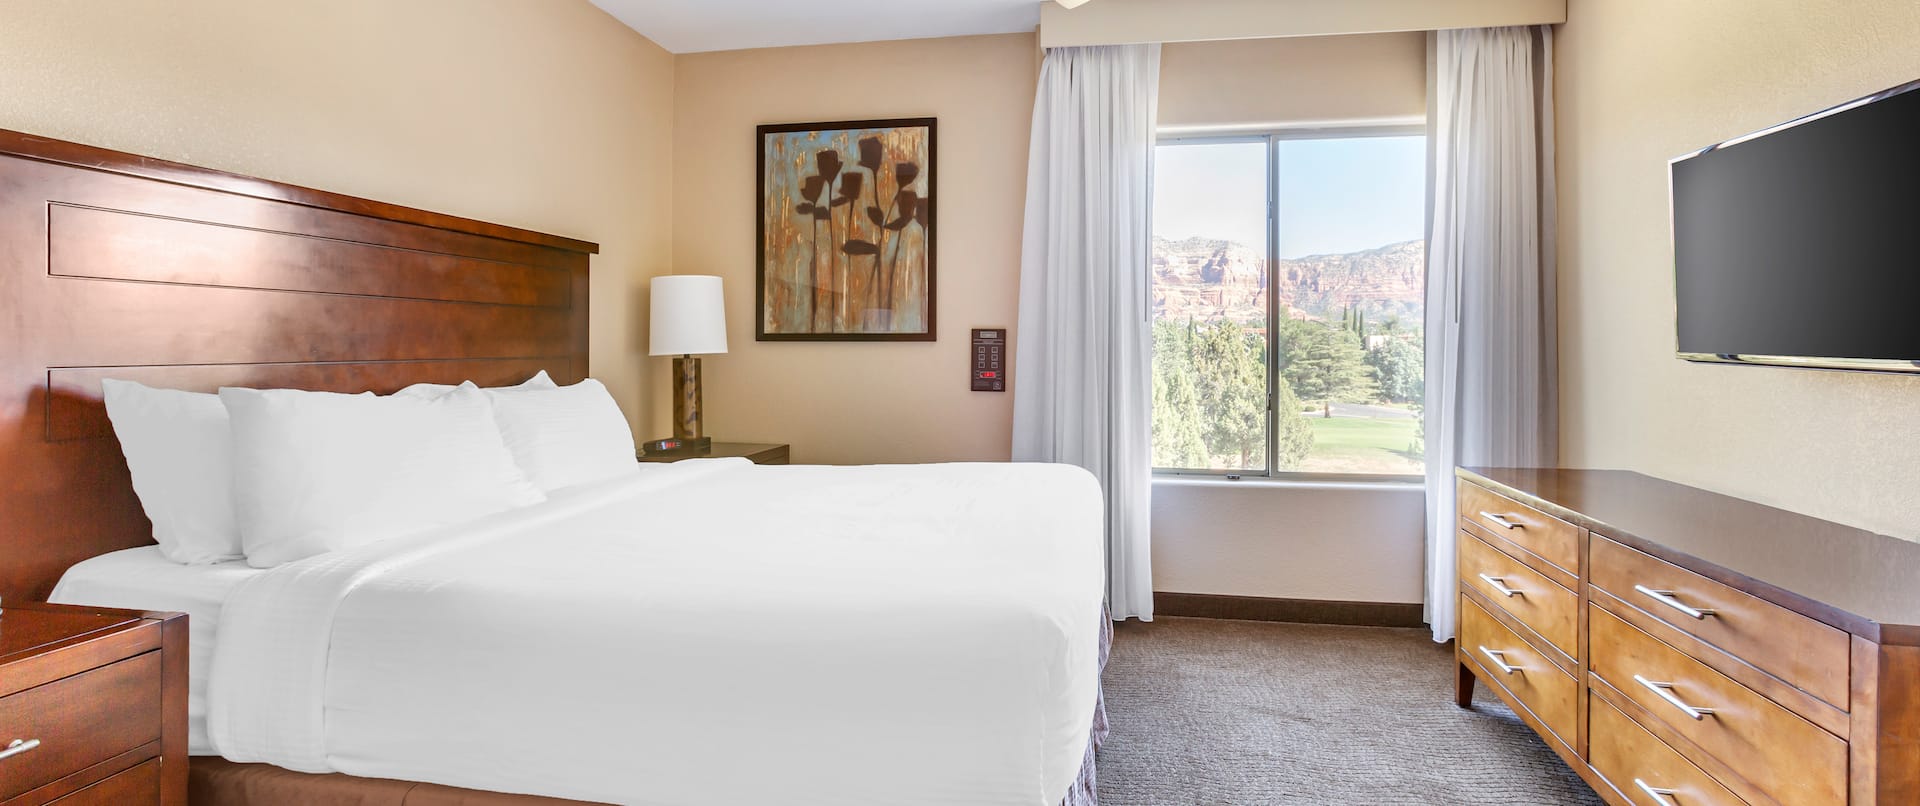 guest suite bedroom, 1 king bed, window view